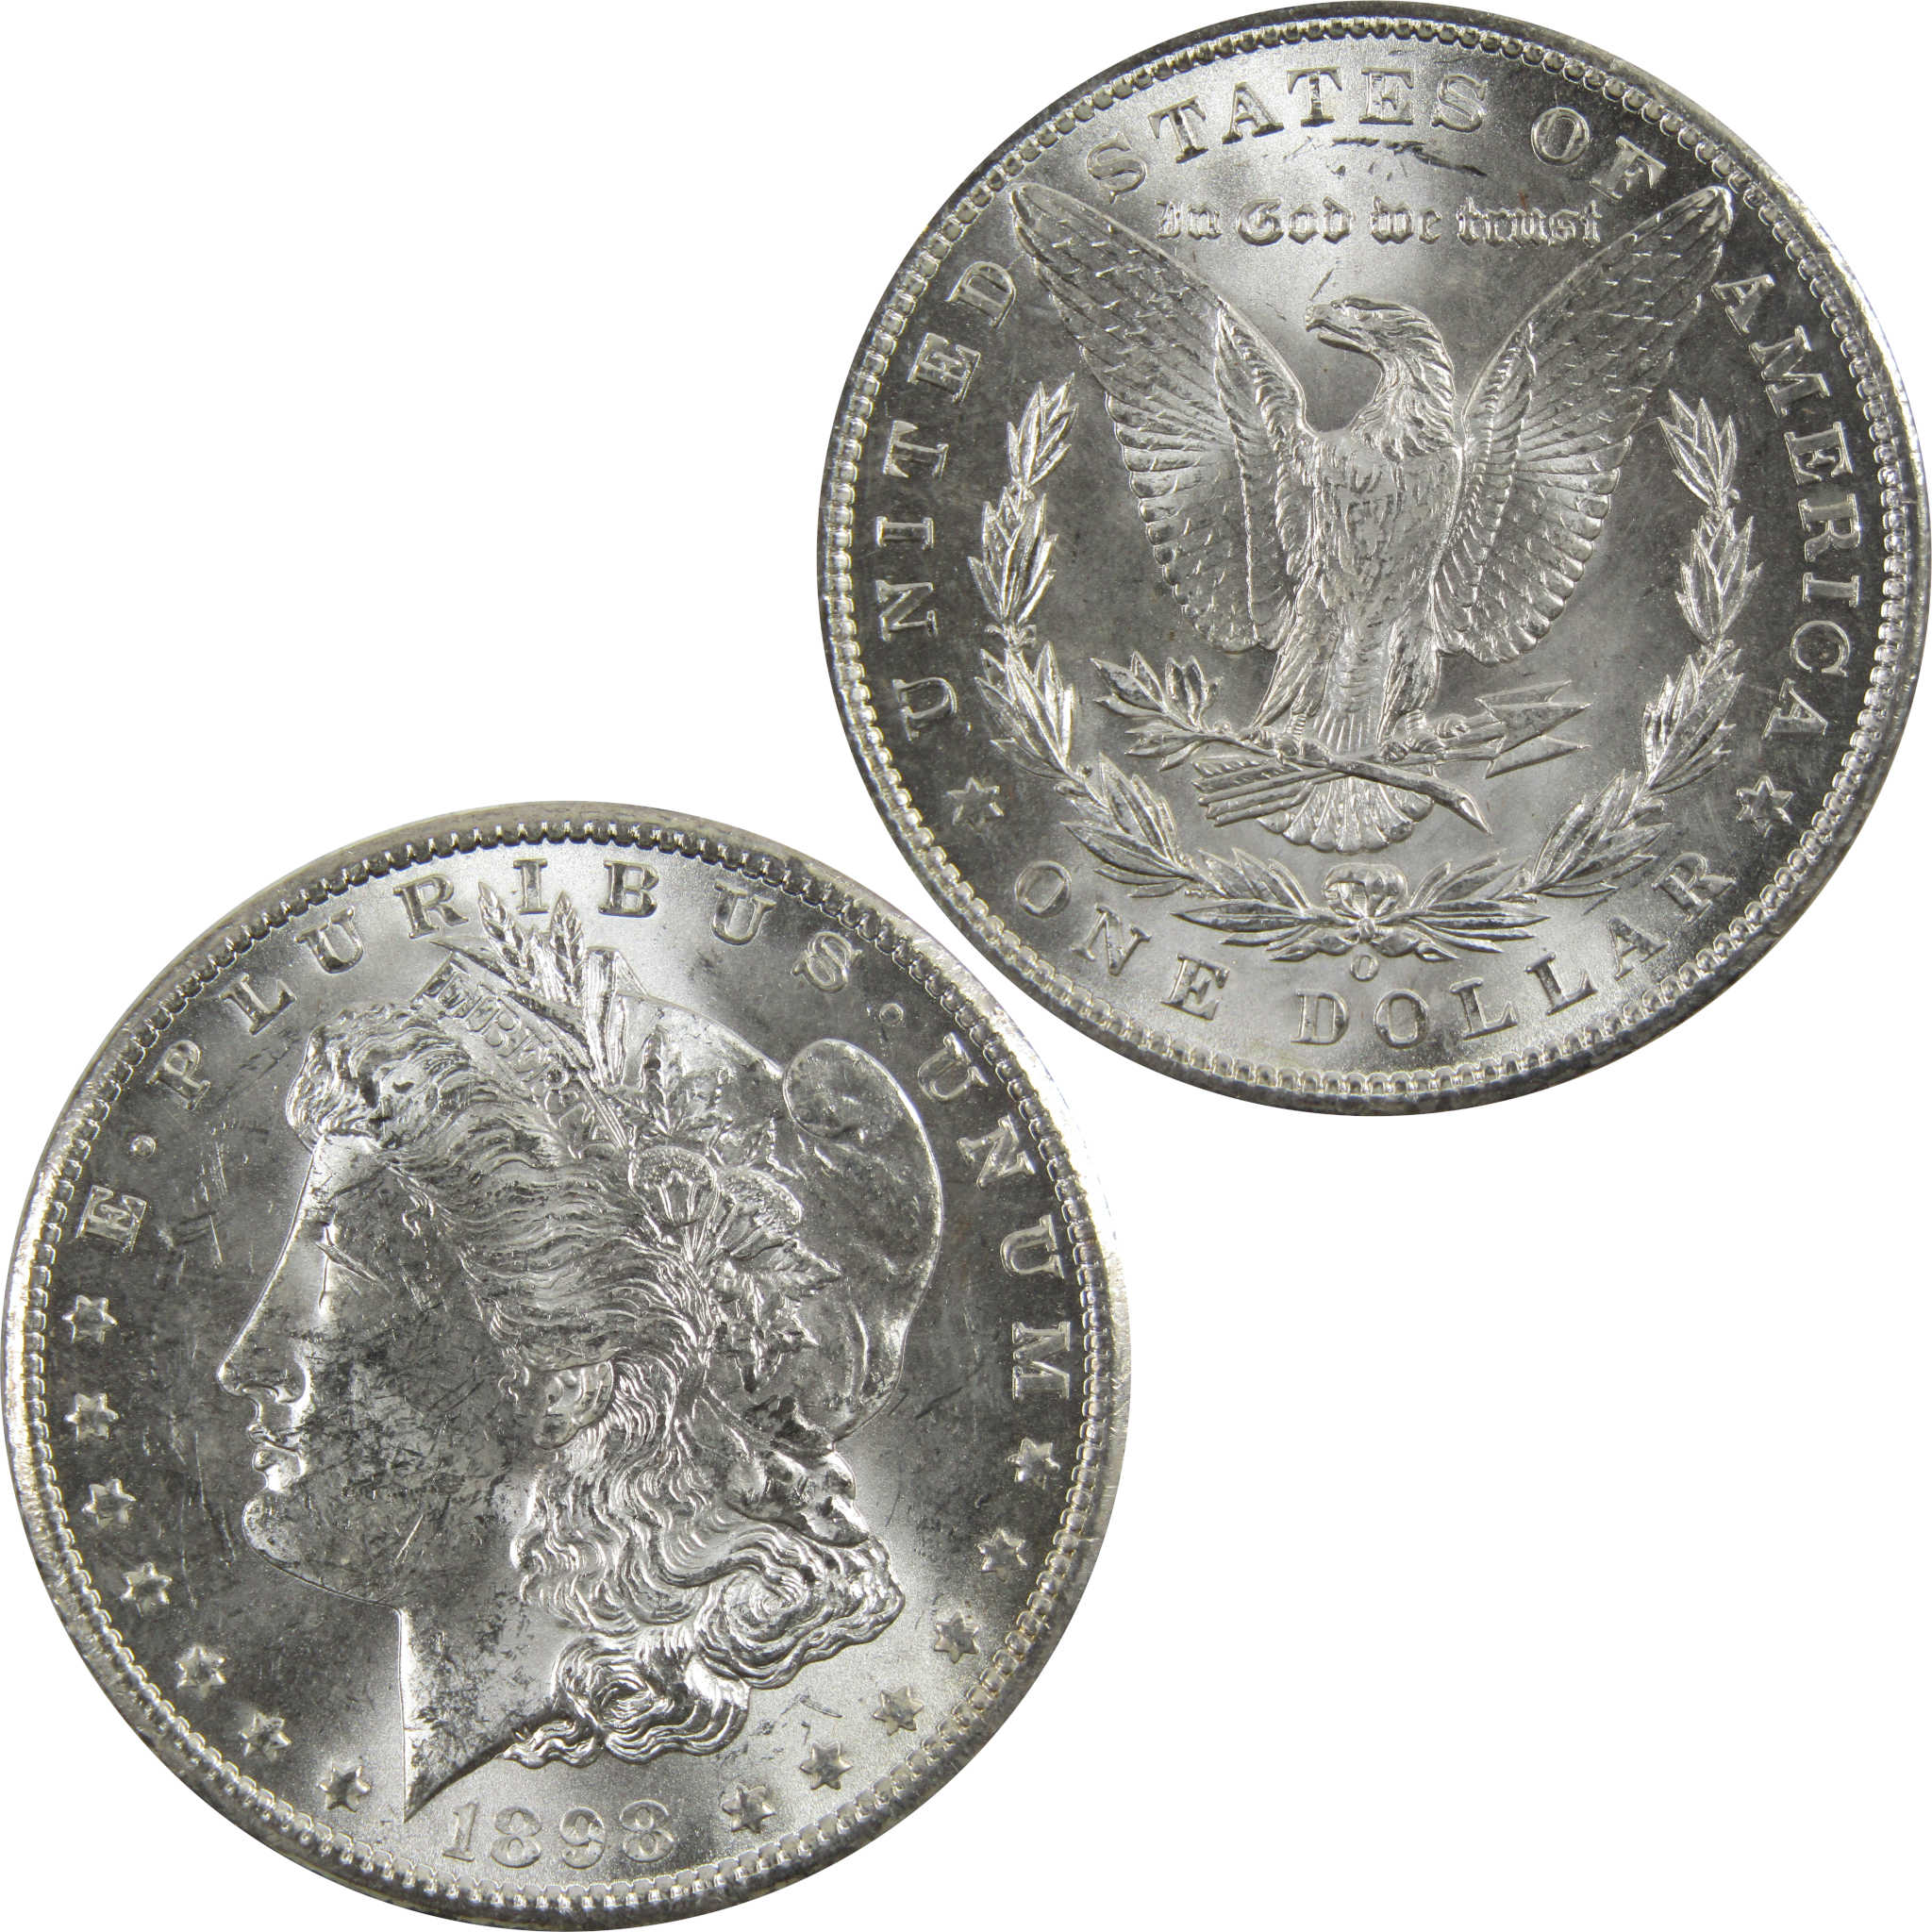 1898 O Morgan Dollar BU Uncirculated 90% Silver $1 Coin SKU:I5294 - Morgan coin - Morgan silver dollar - Morgan silver dollar for sale - Profile Coins &amp; Collectibles